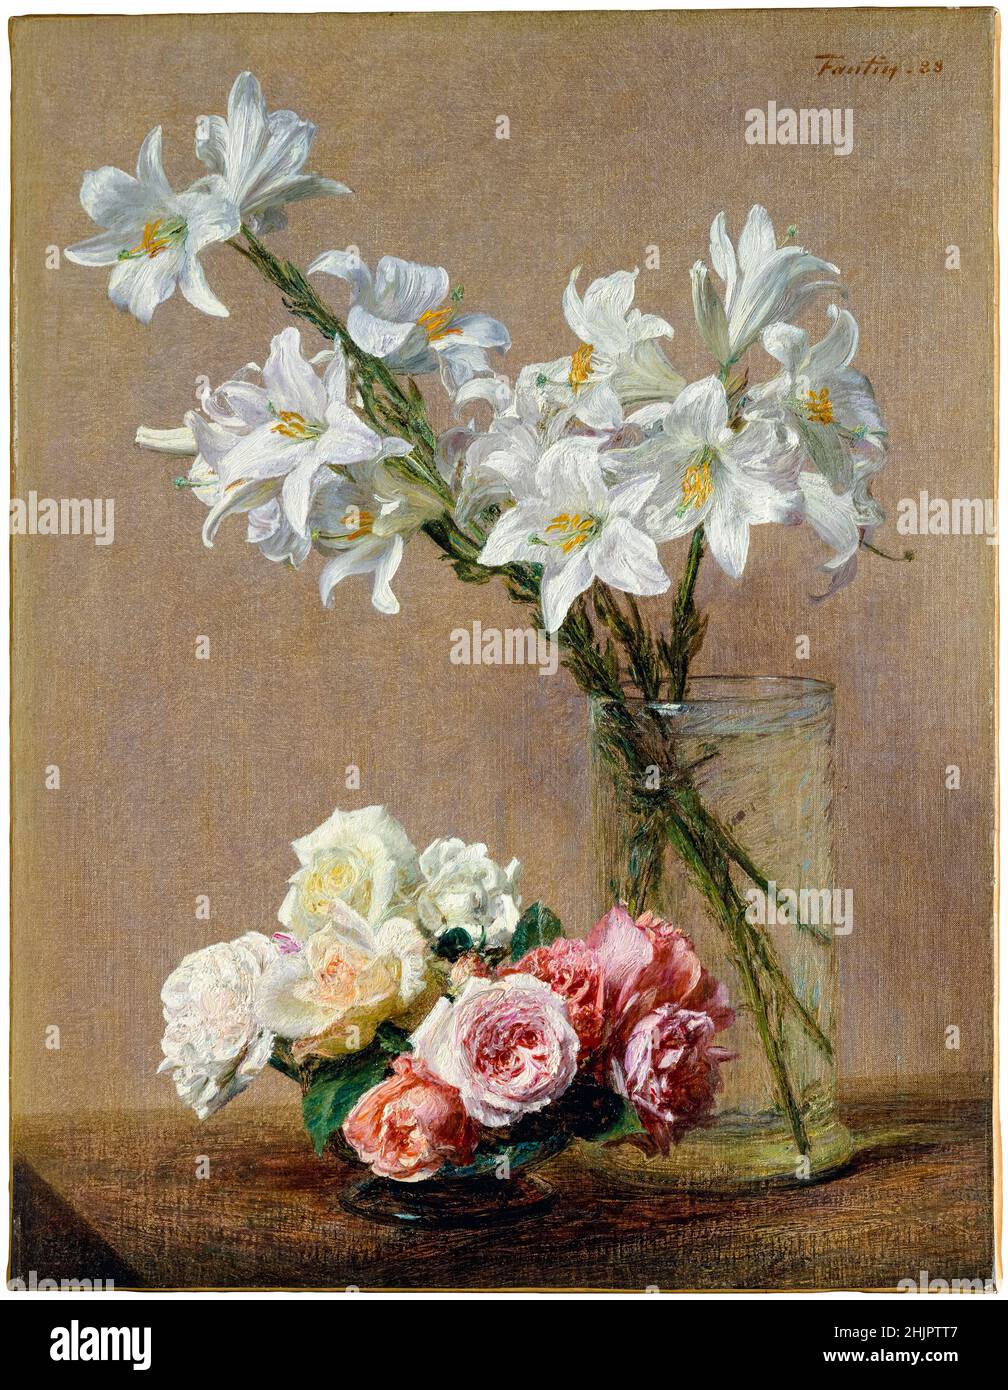 Henri Fantin-Latour pintura de la vida, Rosas y Lilies, 1888 Foto de stock